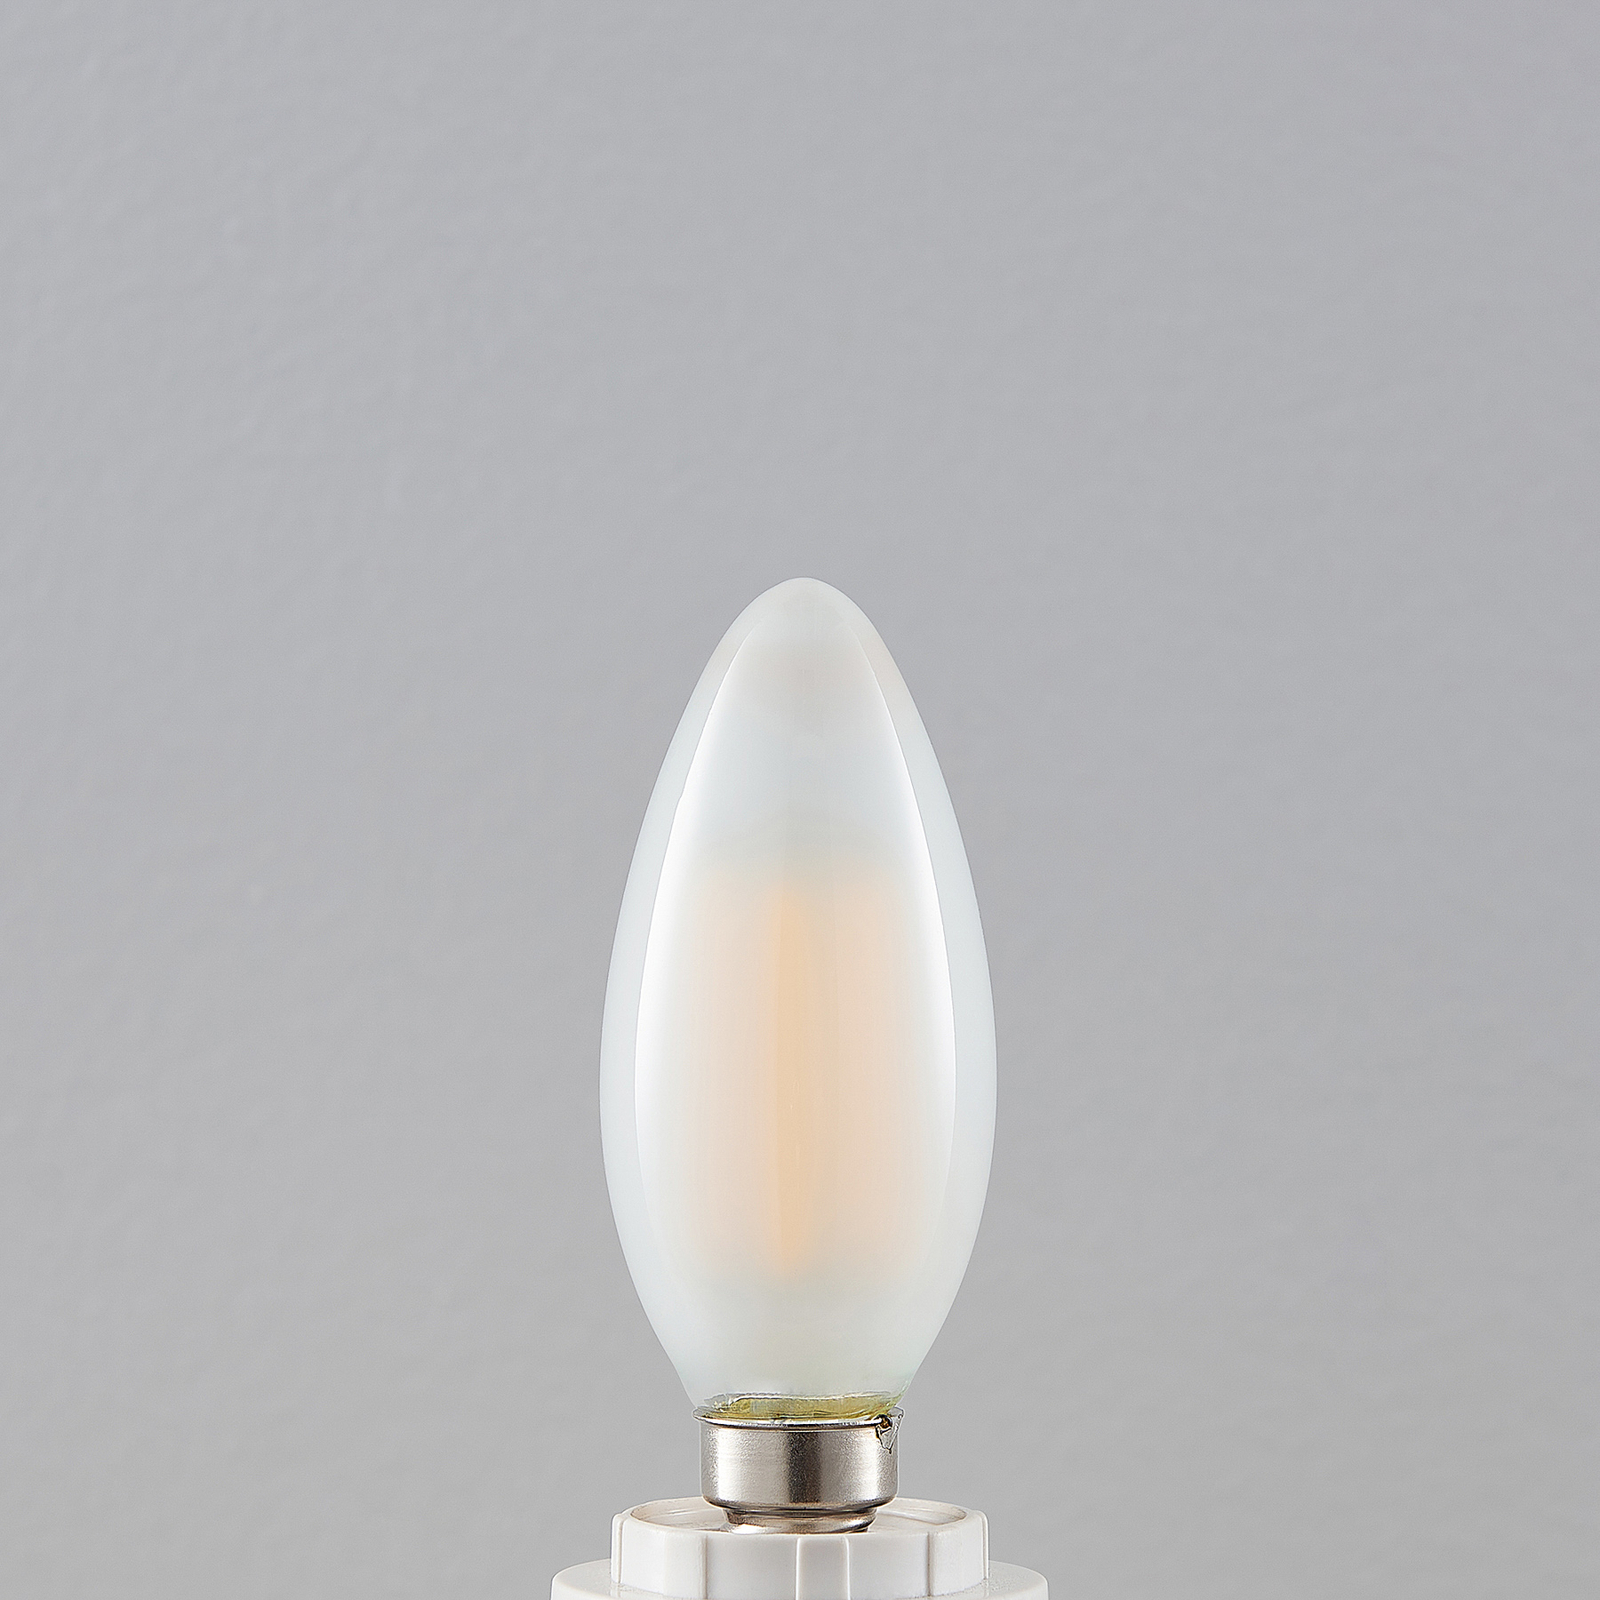 LED lempa E14 4W 2700K žvakė, reguliuojamo ryškumo, matinė, 2 vnt